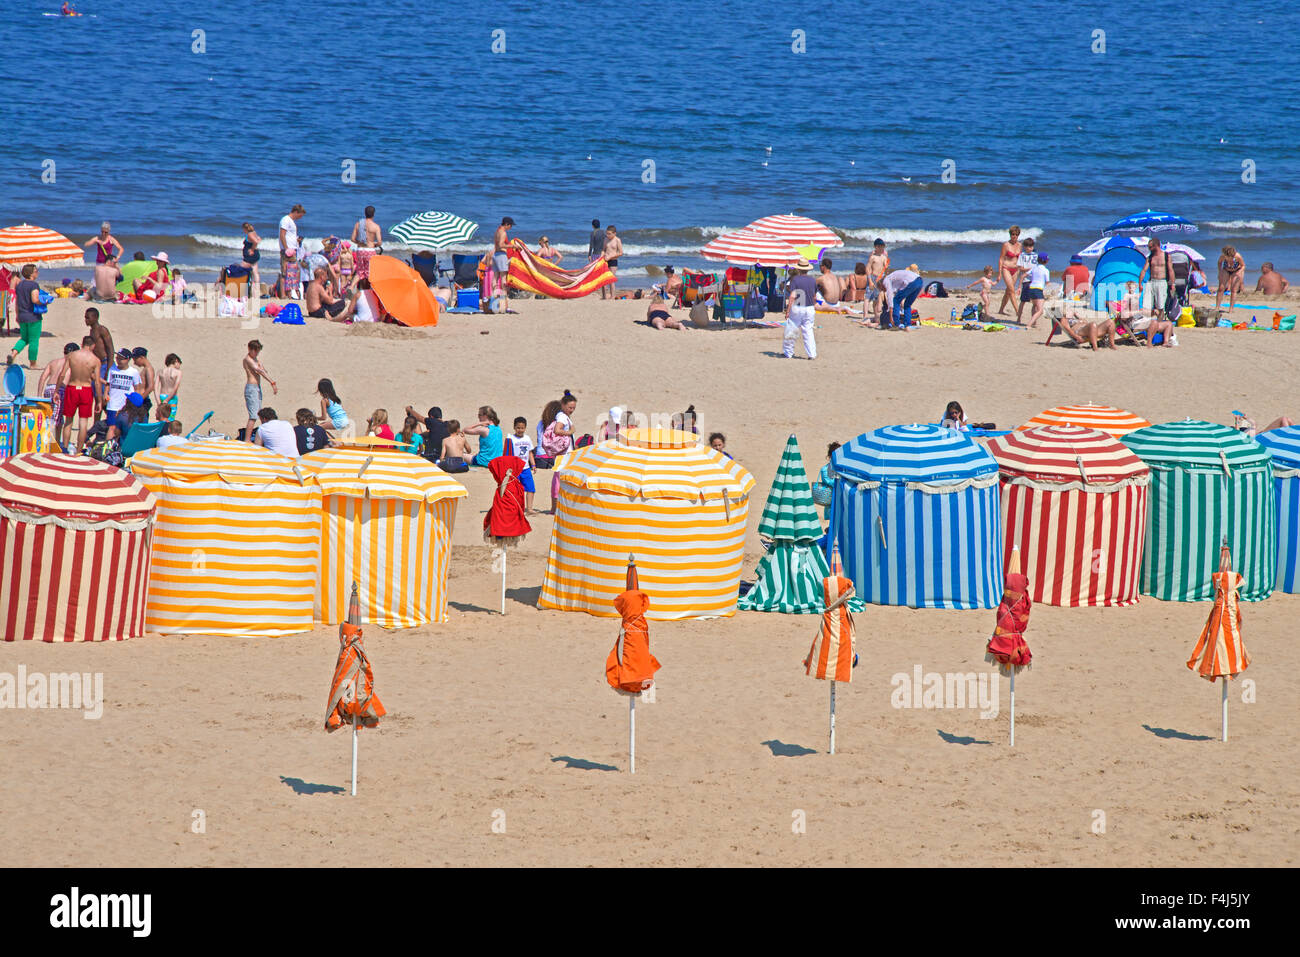 Typische Farbe gestreift Strandkabinen, Touristen, Strand und Meer, Trouville Sur Mer, Normandie, Frankreich, Europa Stockfoto